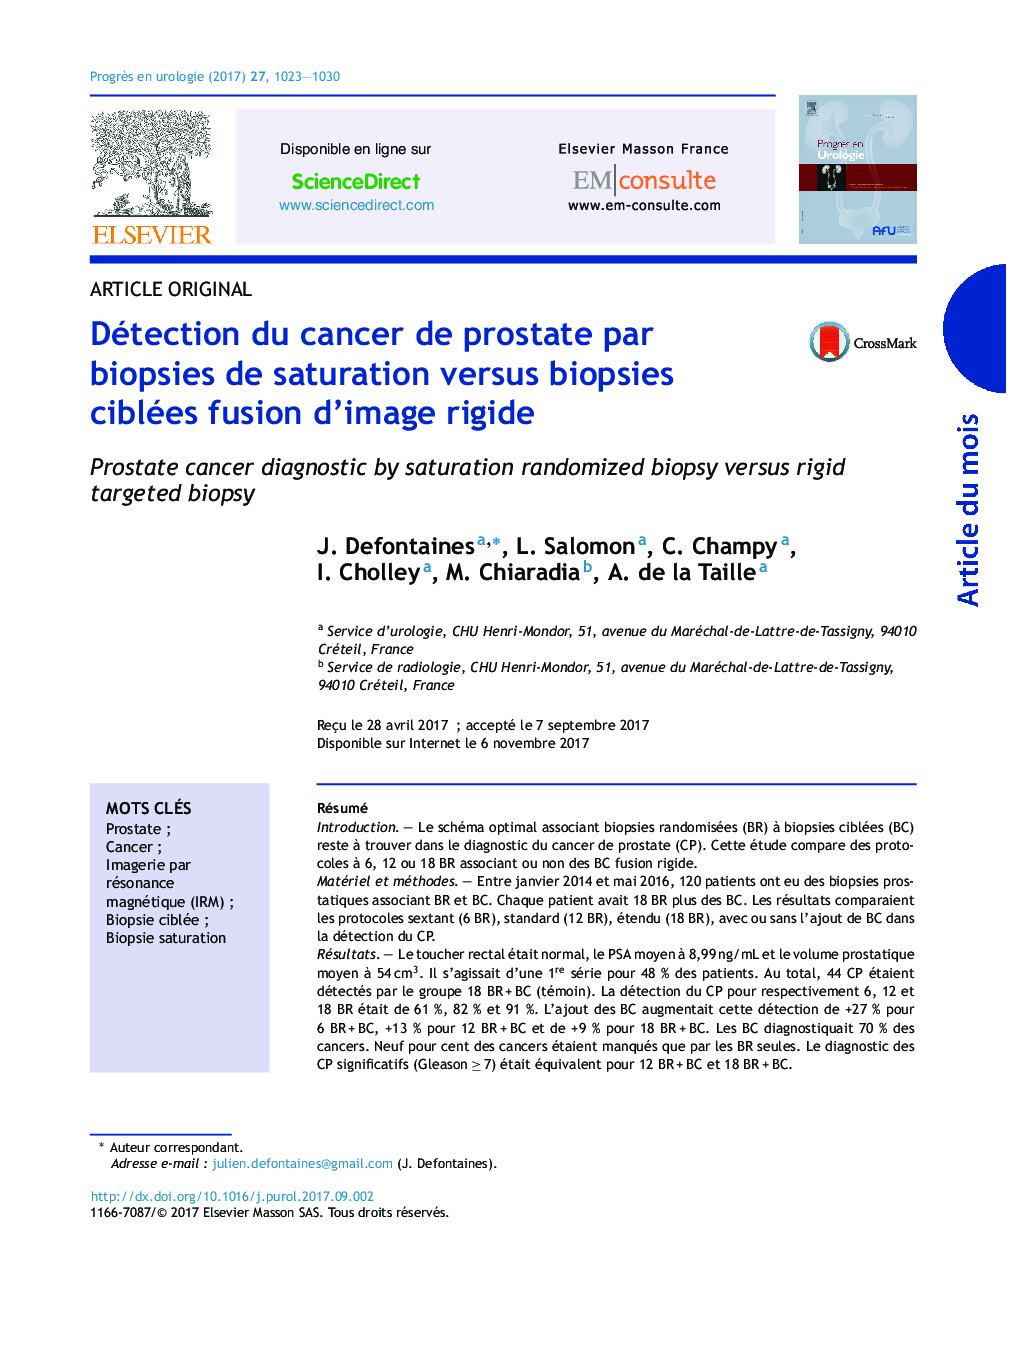 Détection du cancer de prostate par biopsies de saturation versus biopsies ciblées fusion d'image rigide